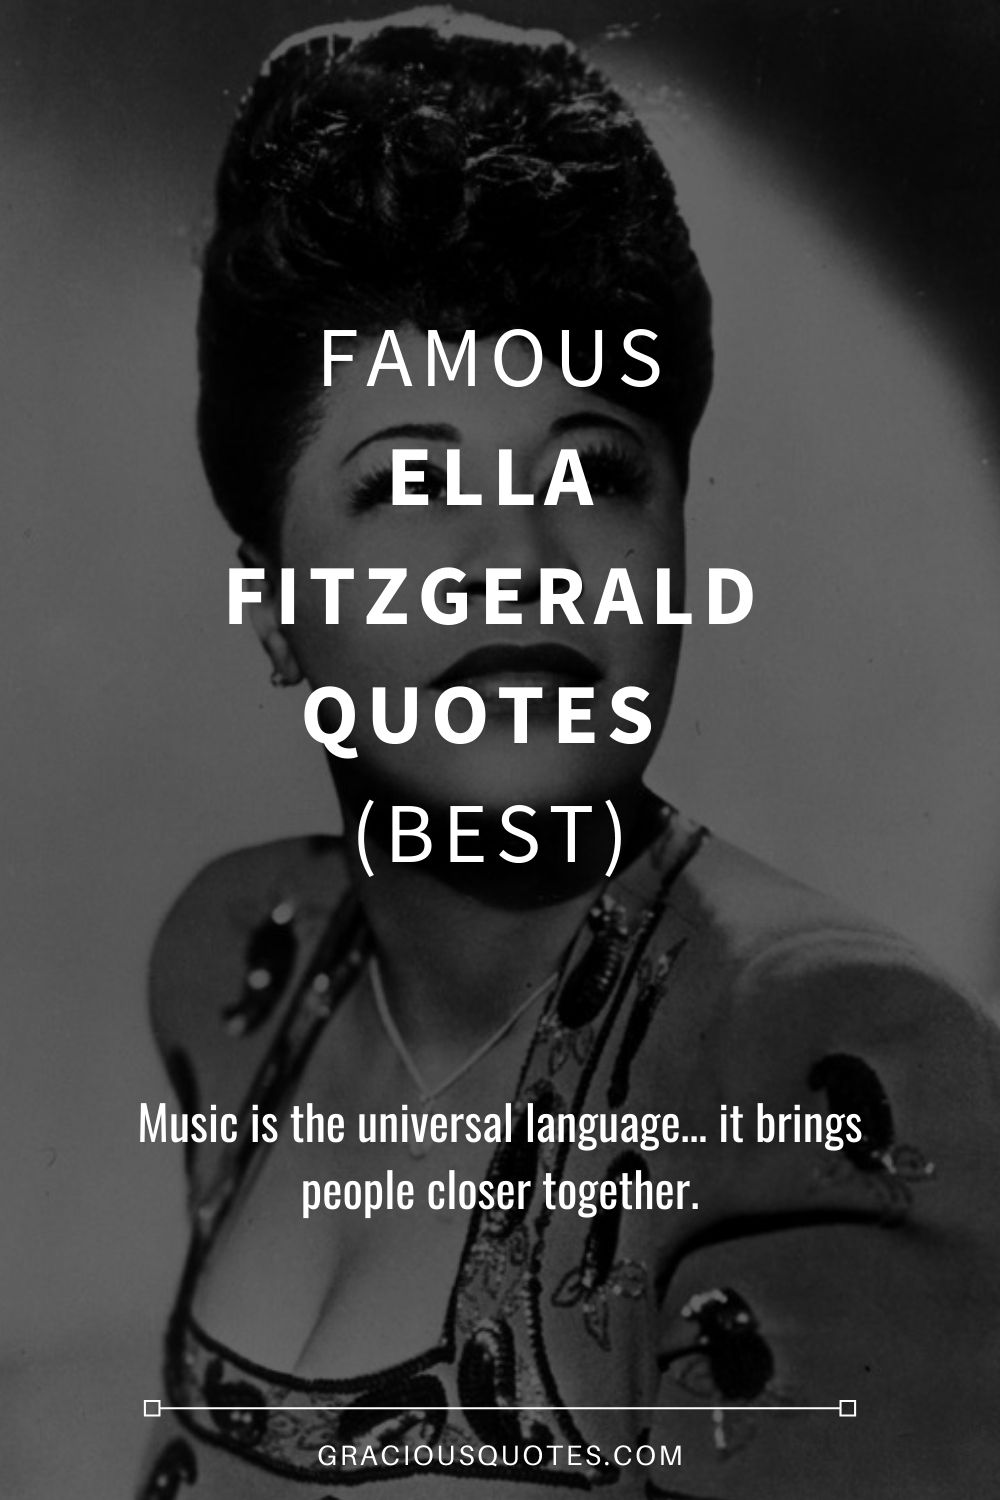 10 Best Ella Fitzgerald Quotes